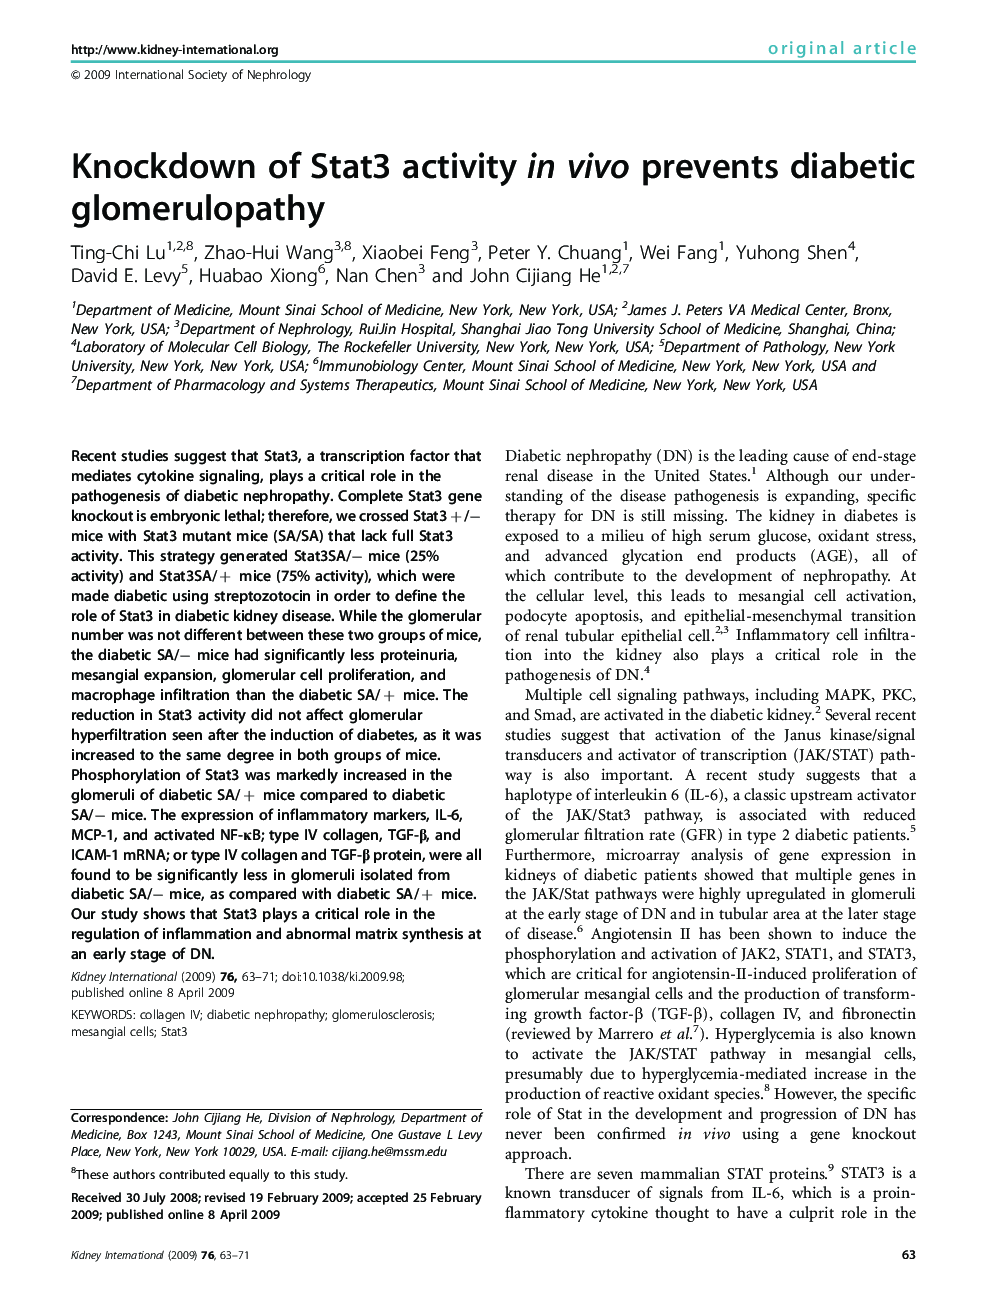 Knockdown of Stat3 activity in vivo prevents diabetic glomerulopathy